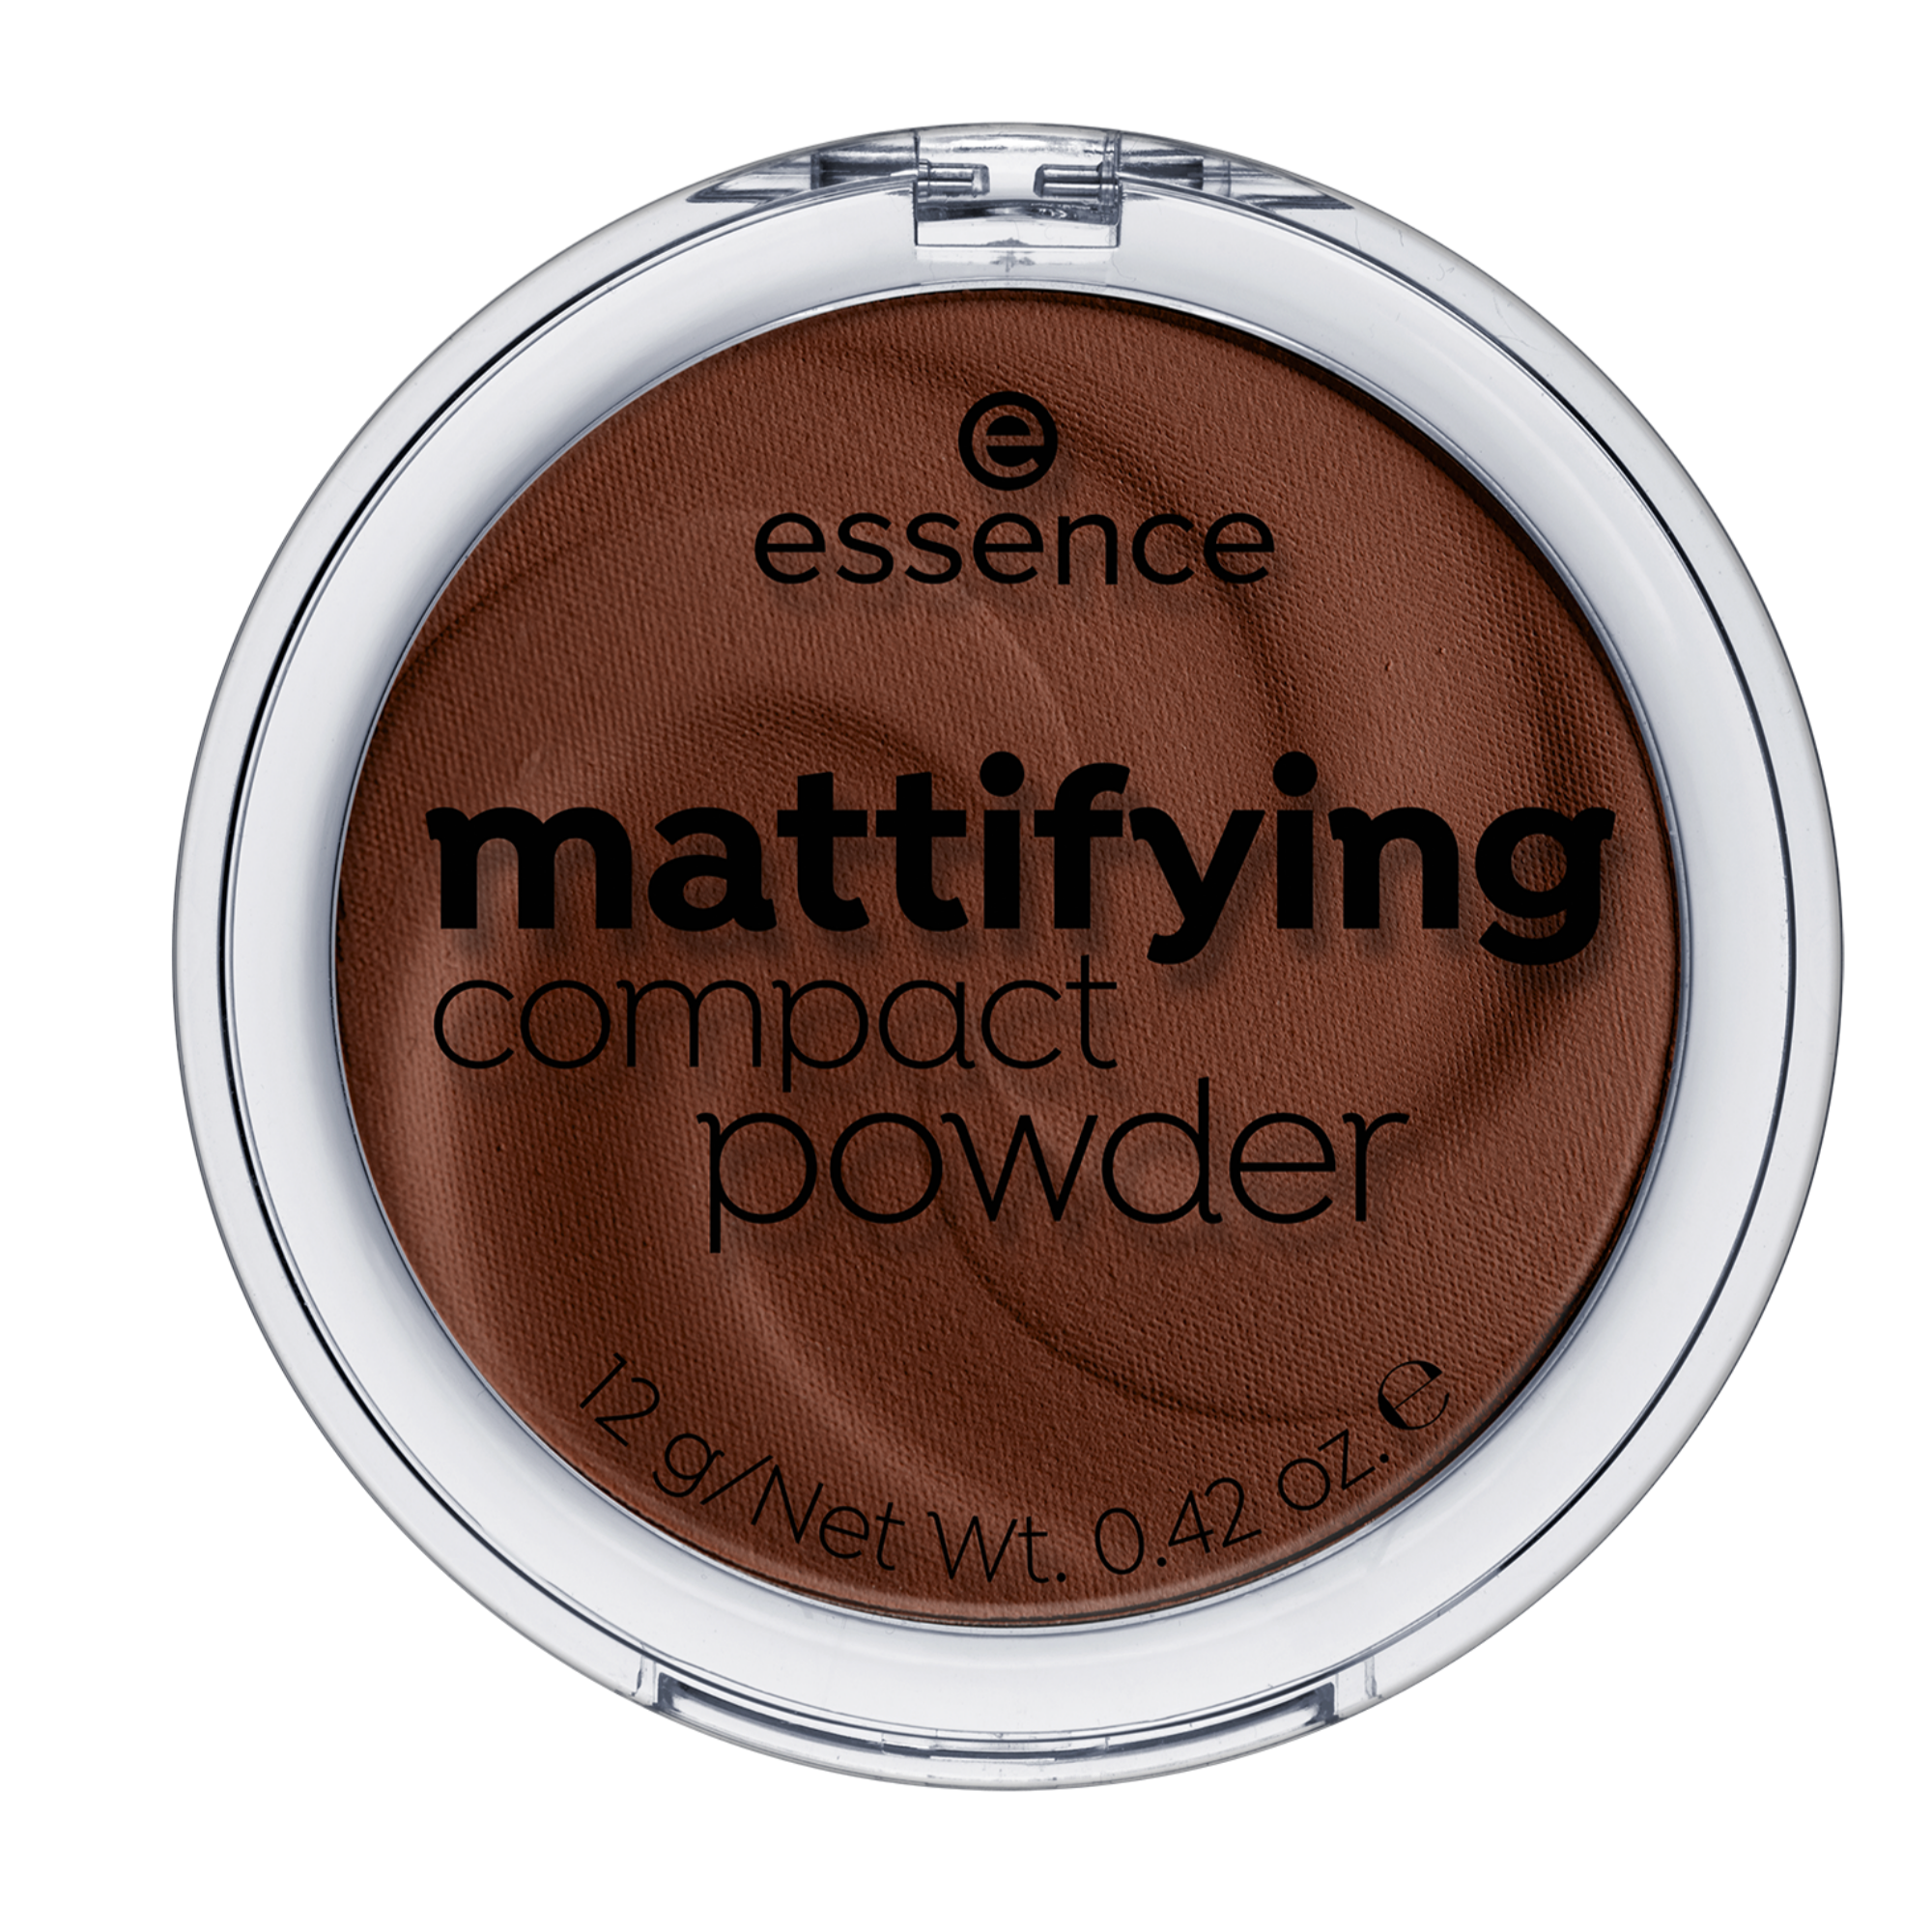 mattifying compact powder